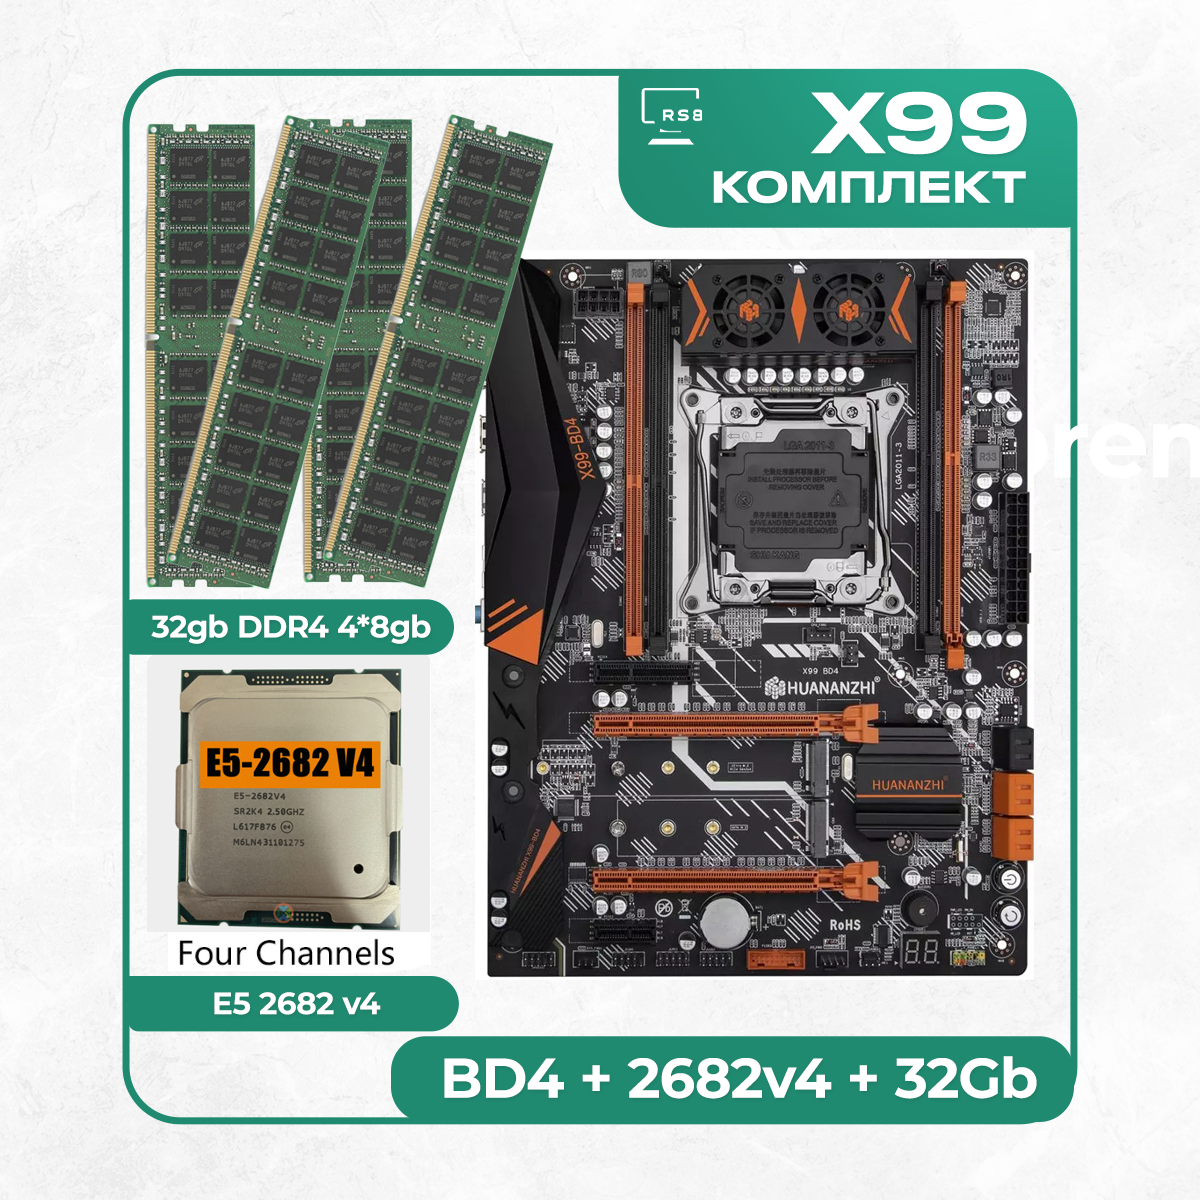 Комплект материнской платы X99: Huananzhi BD4 + Xeon E5 2682v4 + DDR4 32Гб 4х8Гб